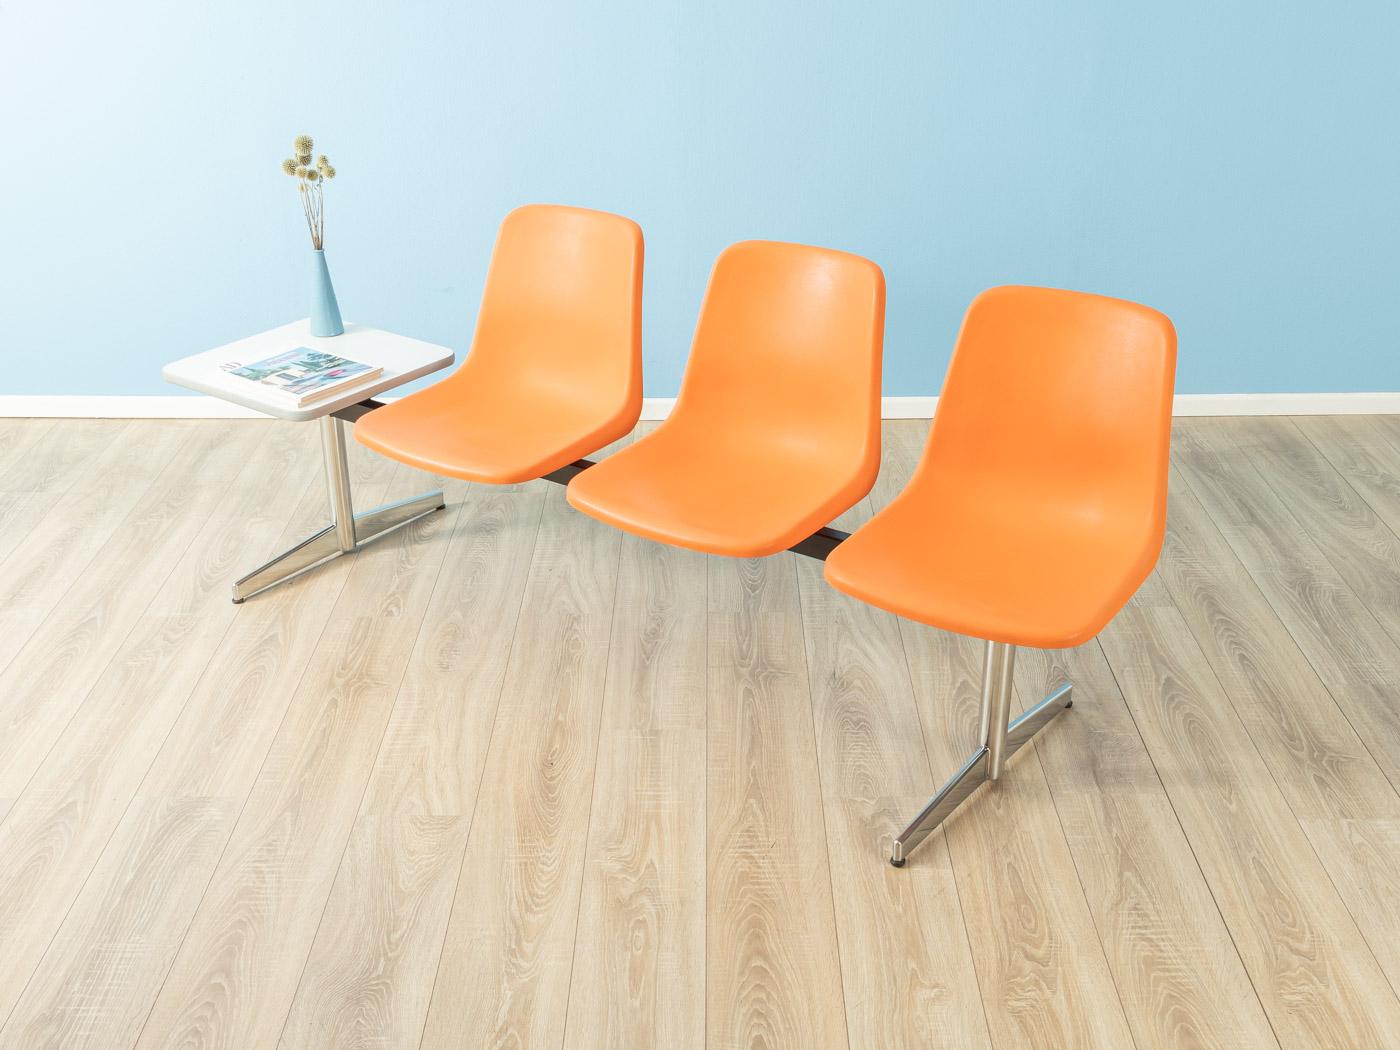 Einzigartige Wartebank aus den 1970er Jahren, hochwertiges Gestell aus Stahl und Edelstahl mit drei Sitzschalen aus Kunststoff in Orange. Der Tisch wurde mit weißem Formica beschichtet, und anstelle des Tisches kann eine vierte Sitzschale montiert